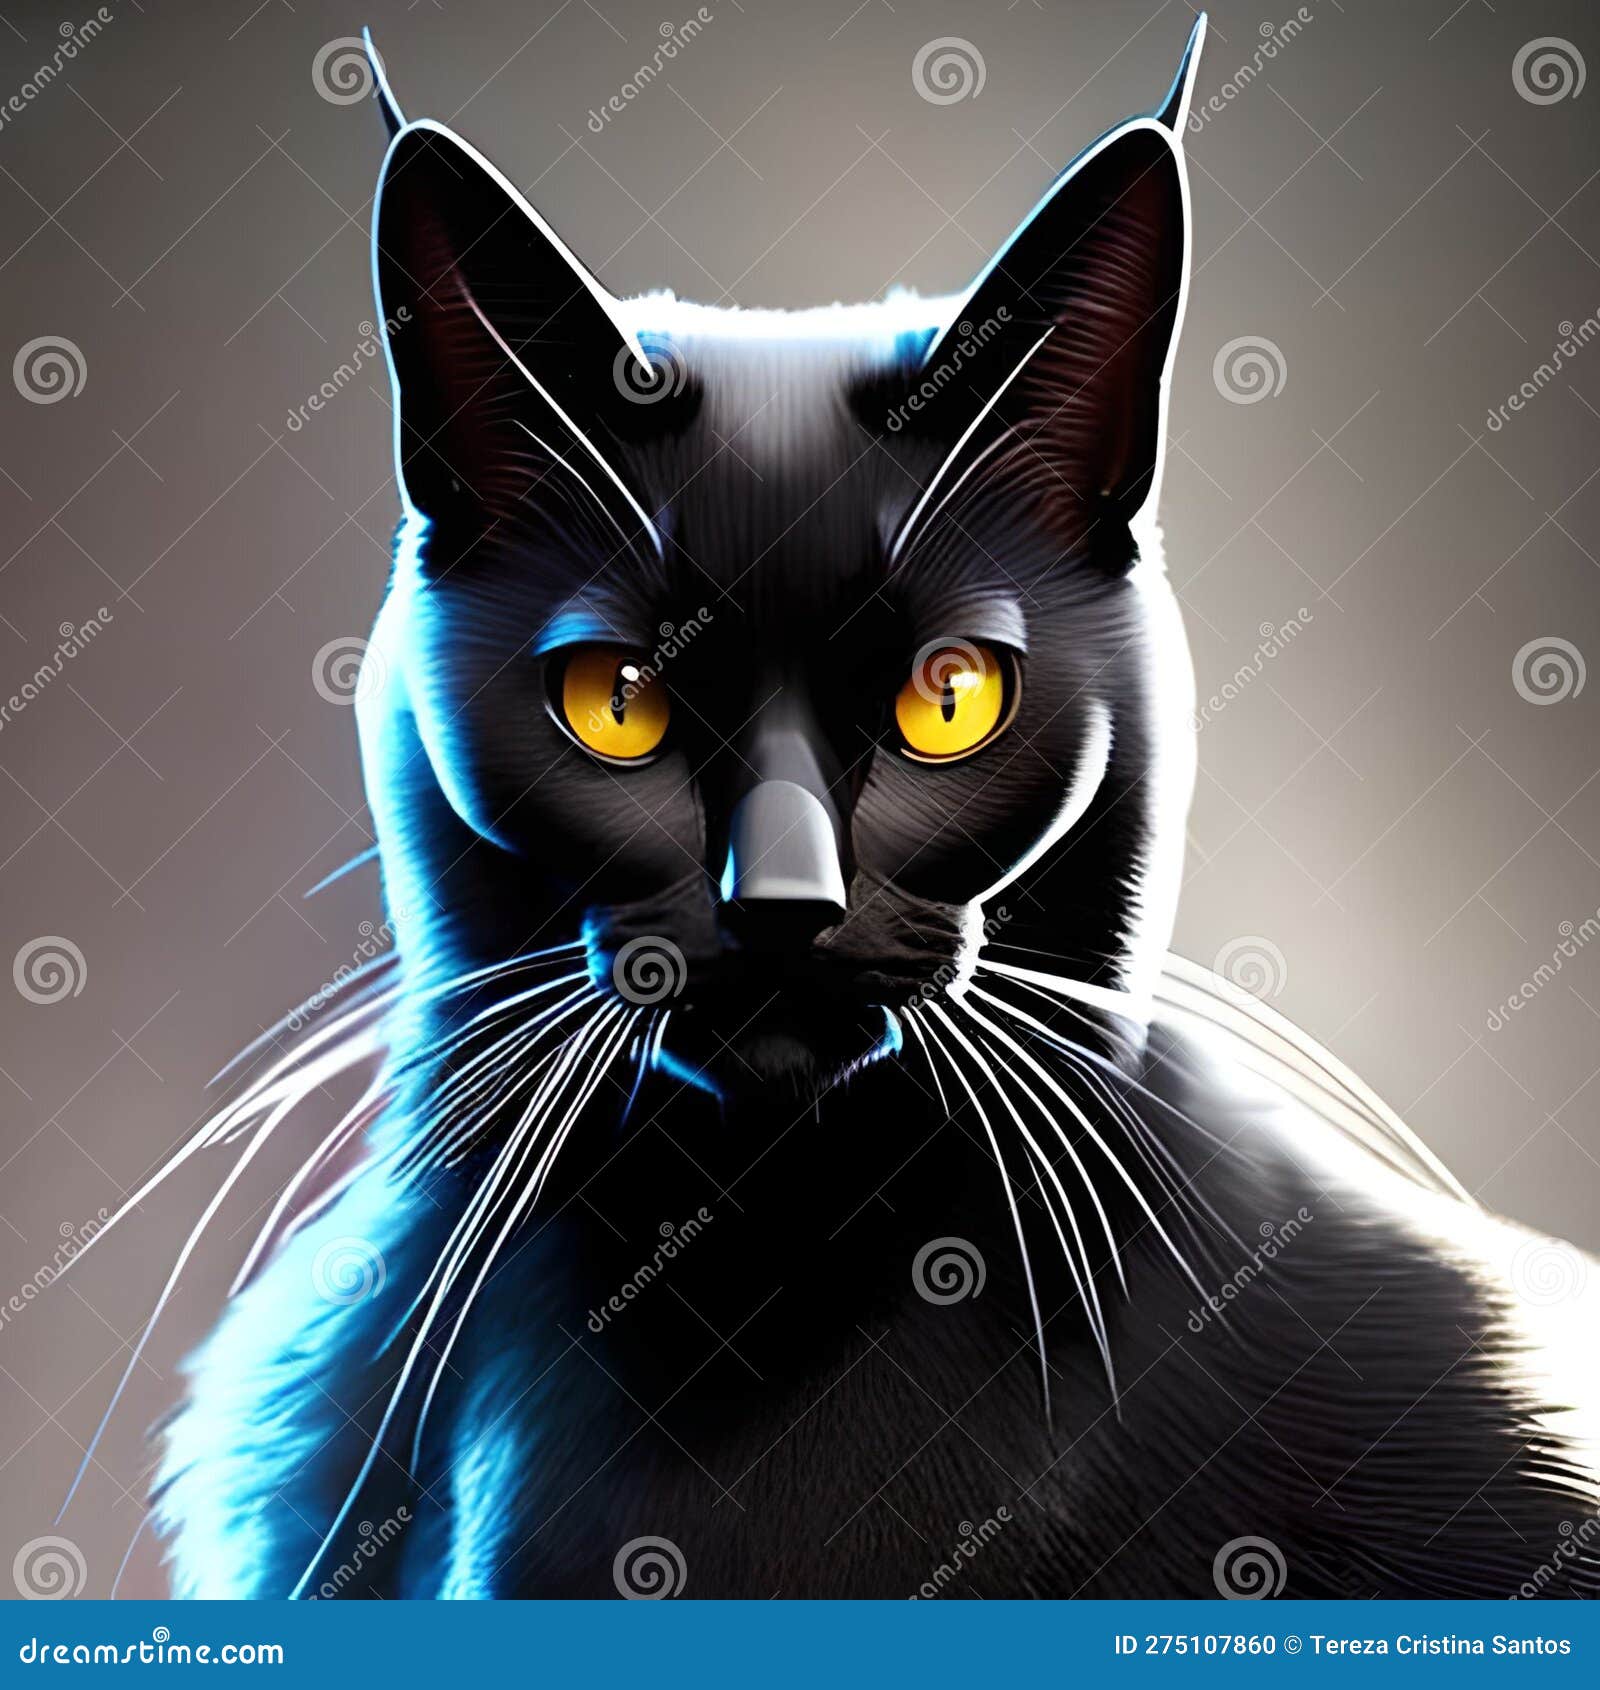 Cabeça de gato bonito realista desenho a preto e branco à mão